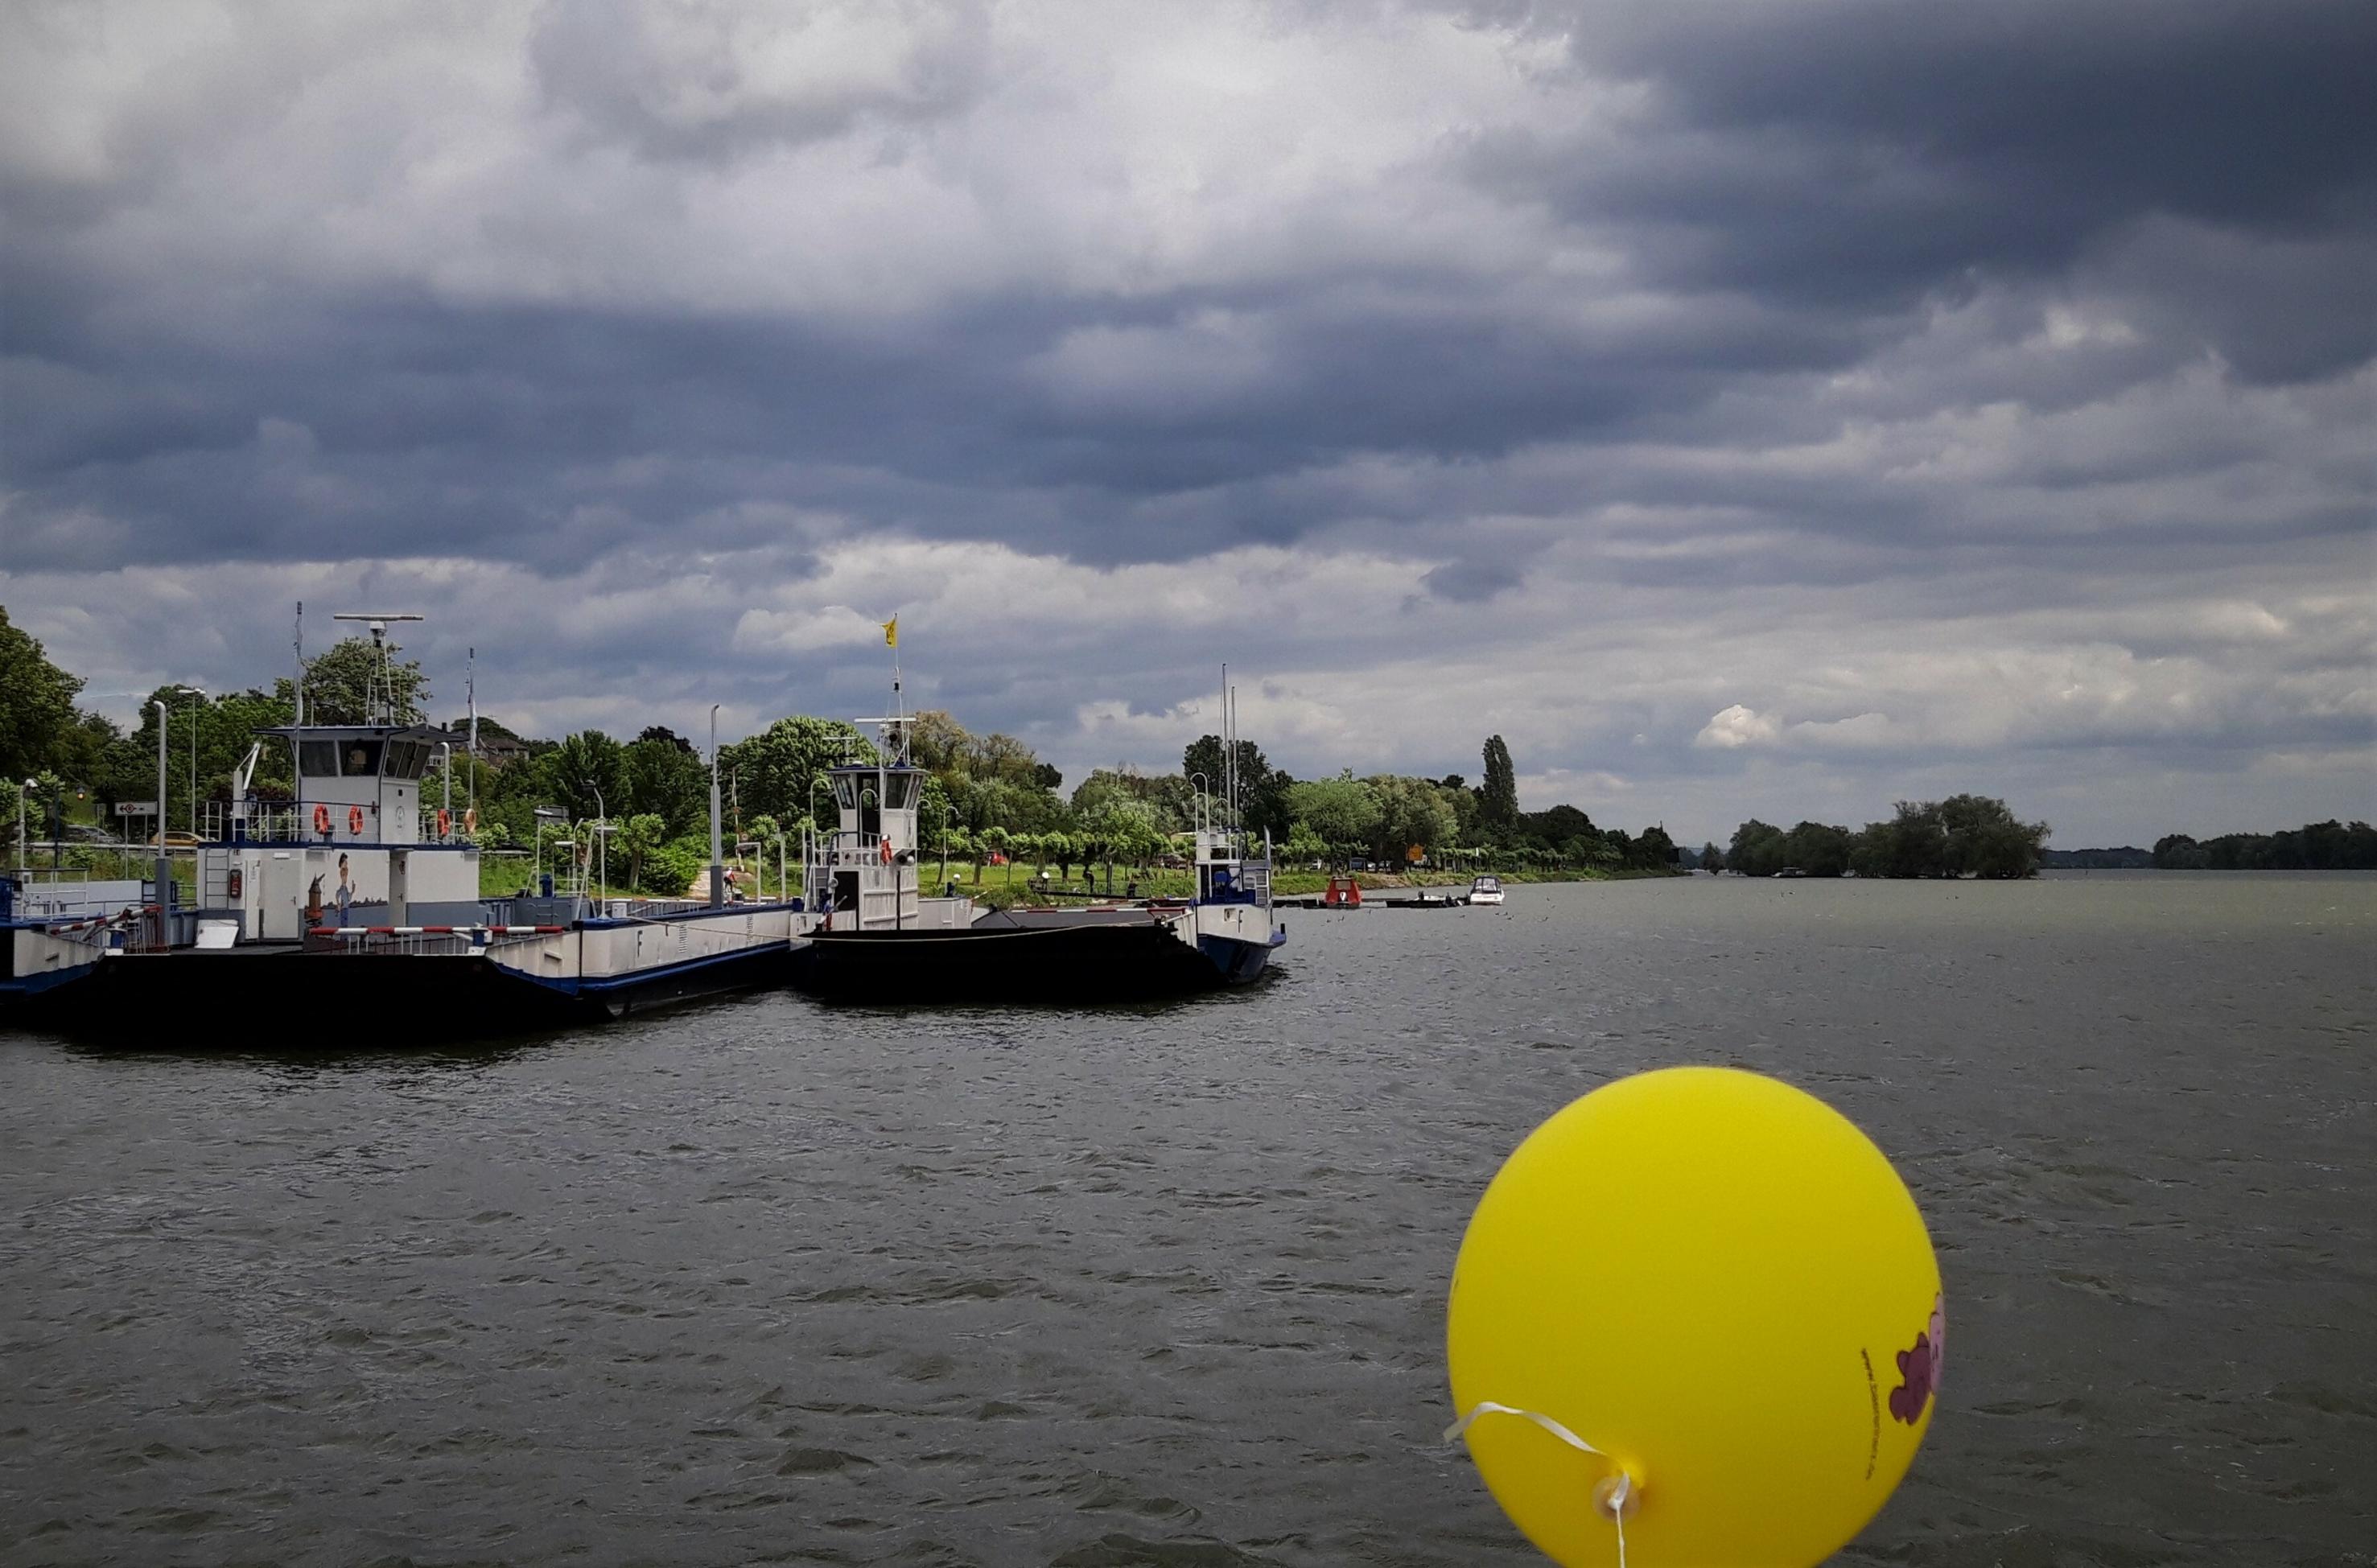 Hinter einem gelben Luftballon ist unter bleischwarzem Himmel das dunkle Rehinwasser zu sehen, auf dem eine Rheinfähre dümpelt.